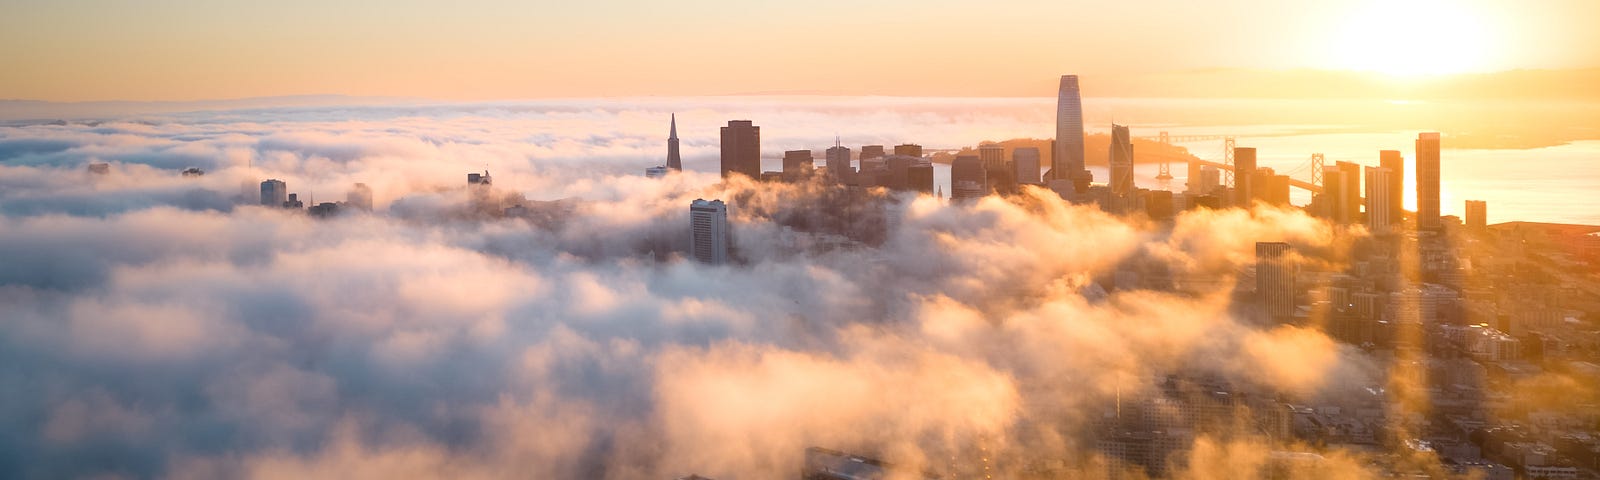 Clouds below city skyscrapers